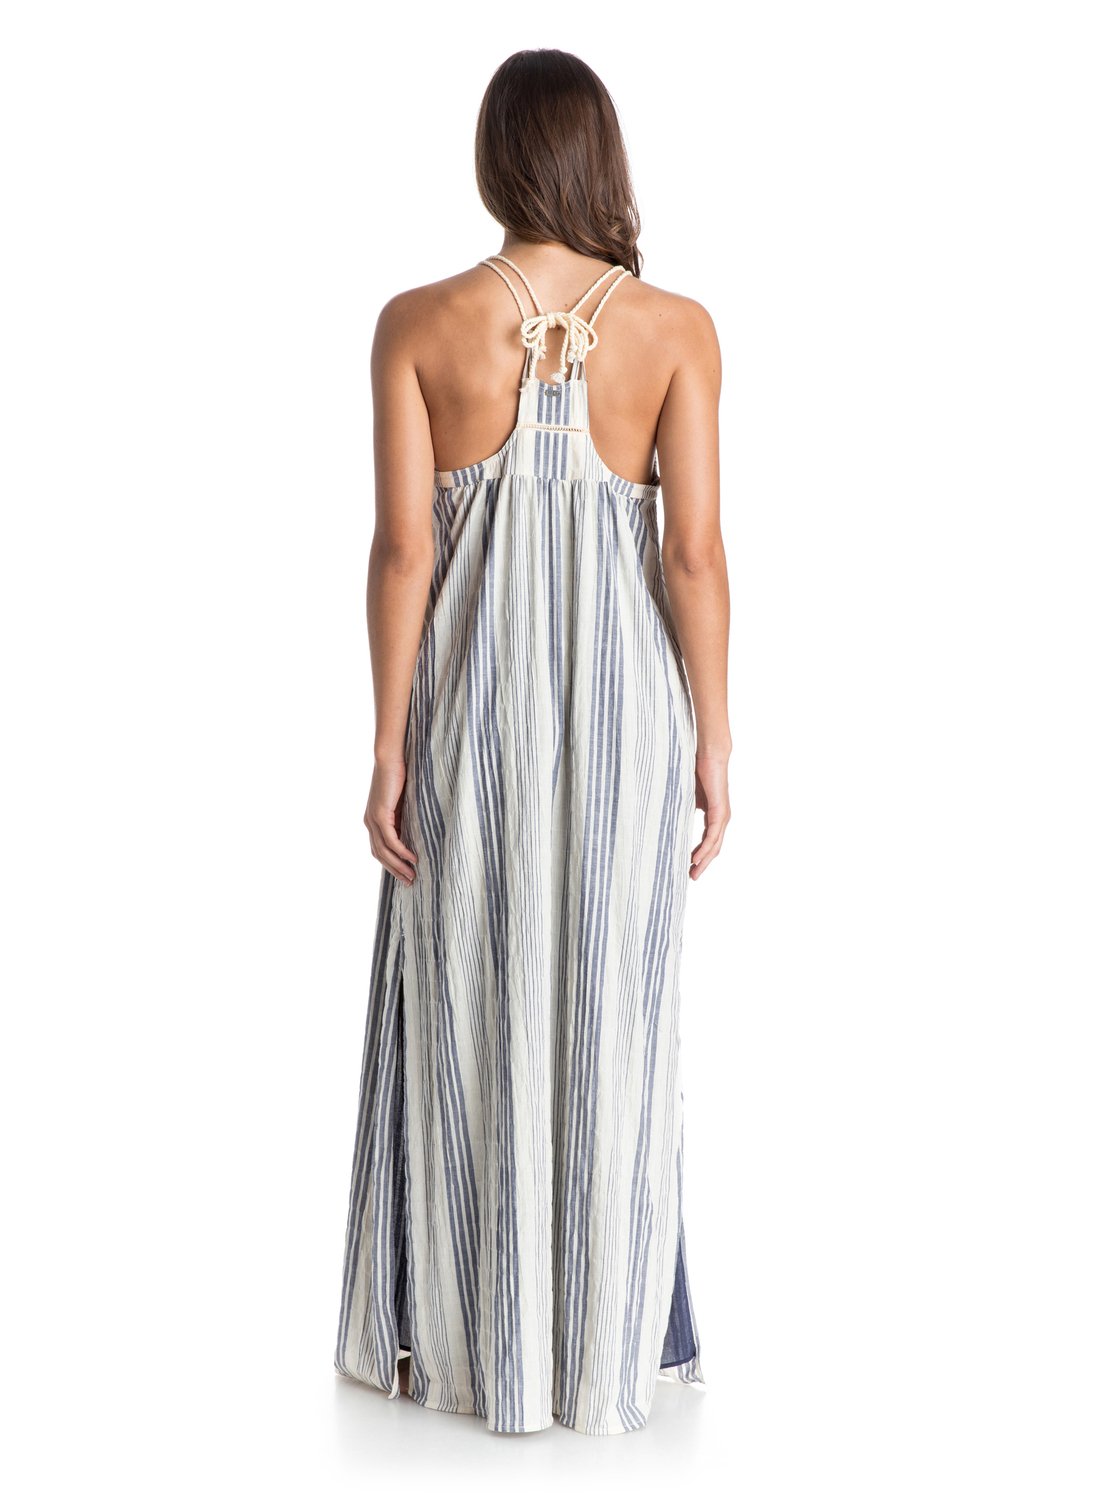 First Love Striped Maxi Dress ARJWD03070 | Roxy